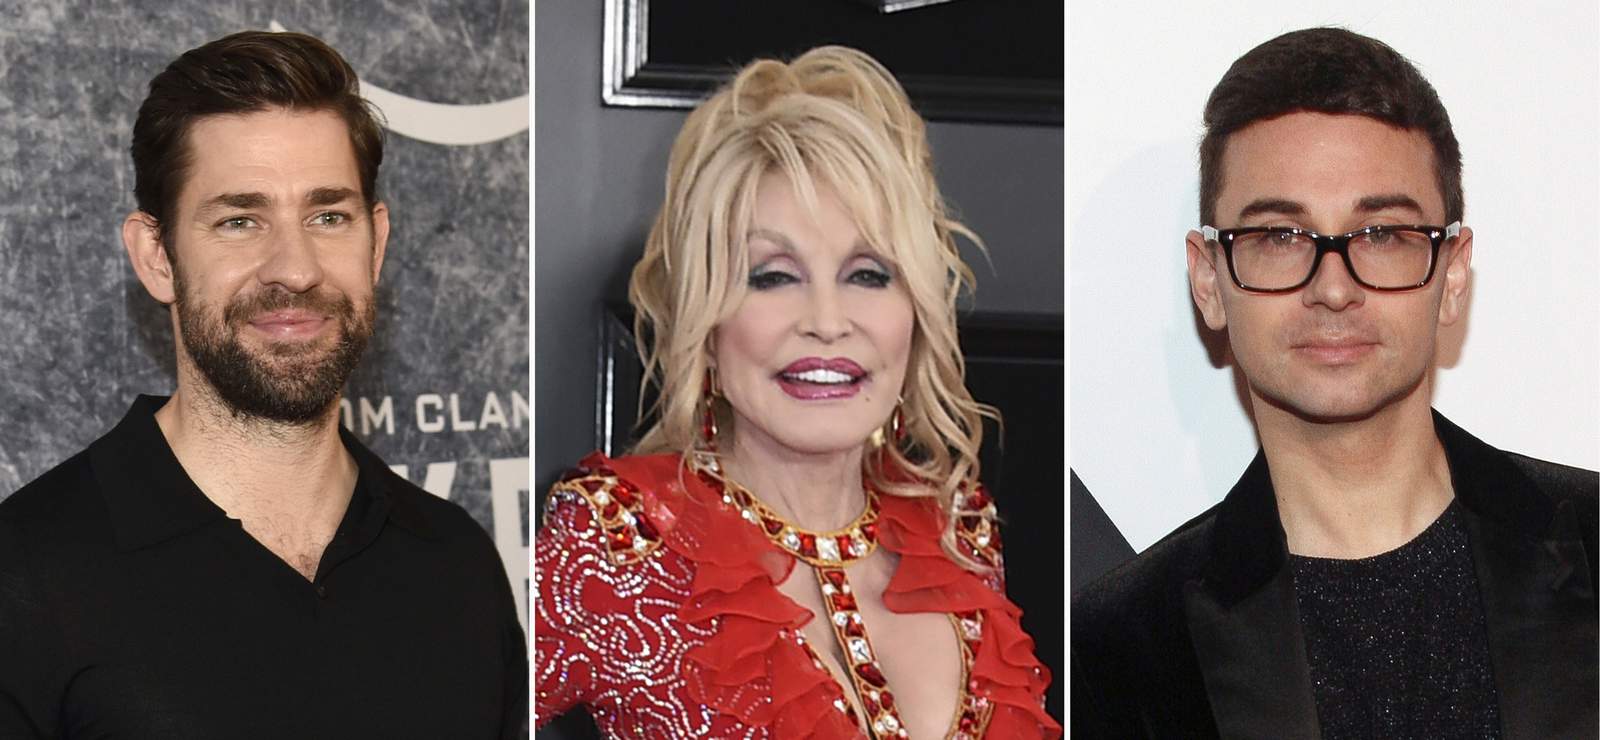 Despite bleak 2020, celebrities make effort to brighten year